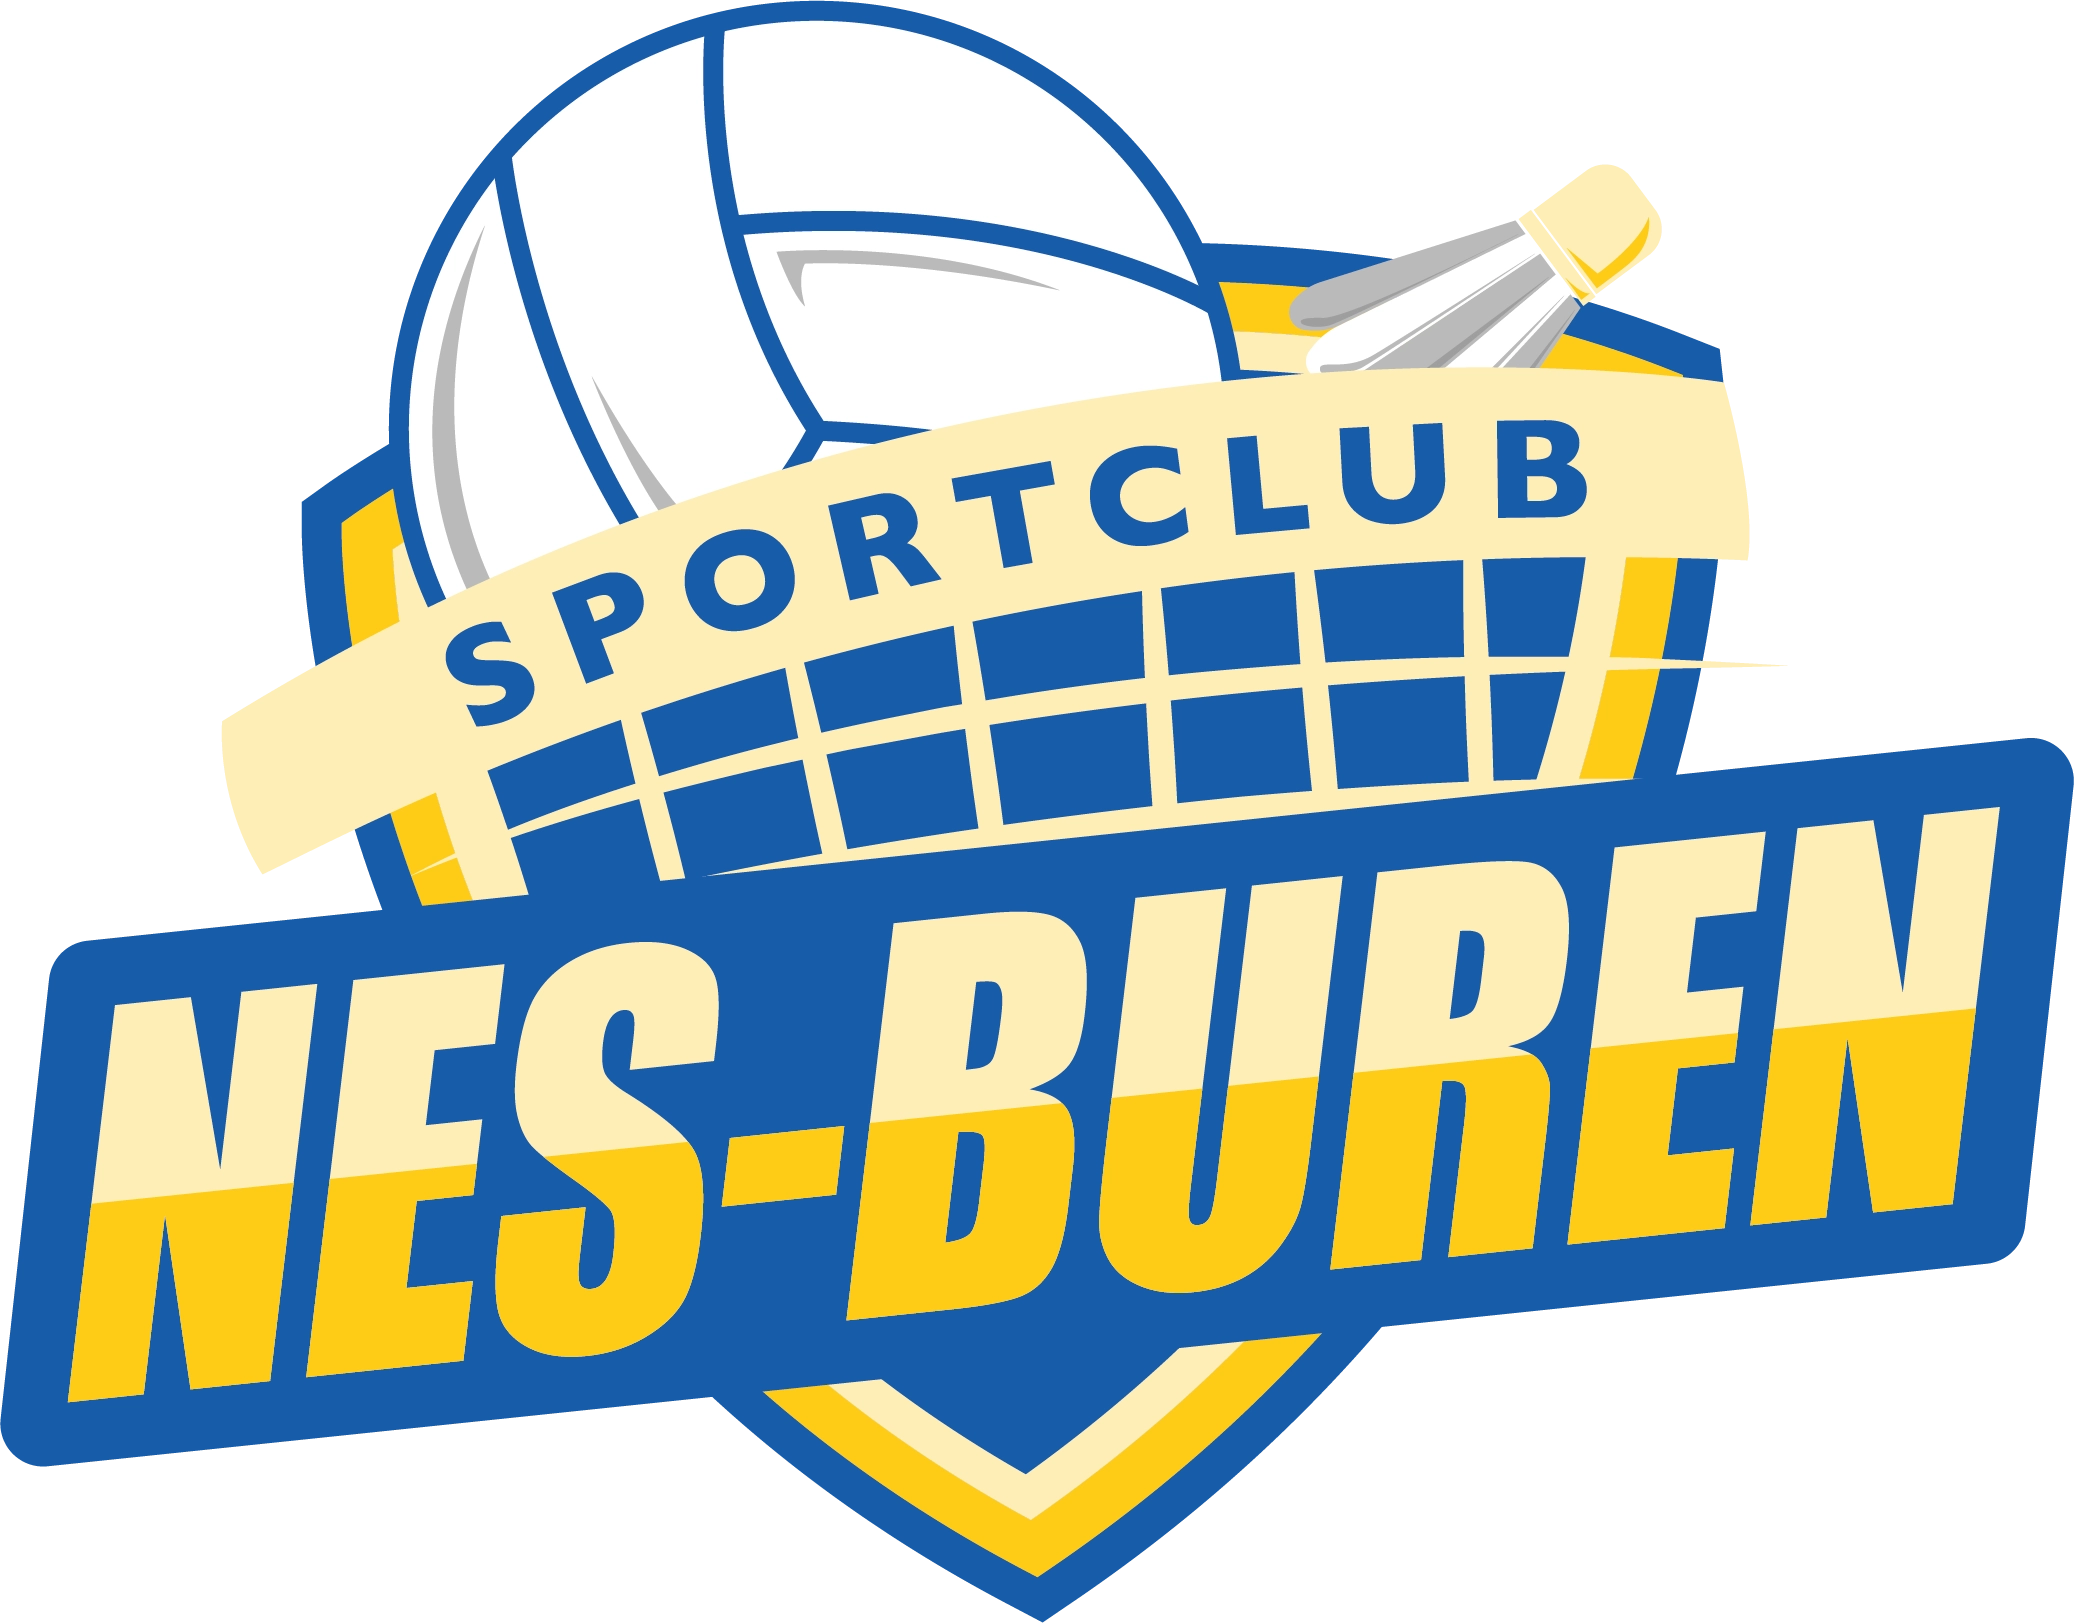 Sportclub Nes Buren